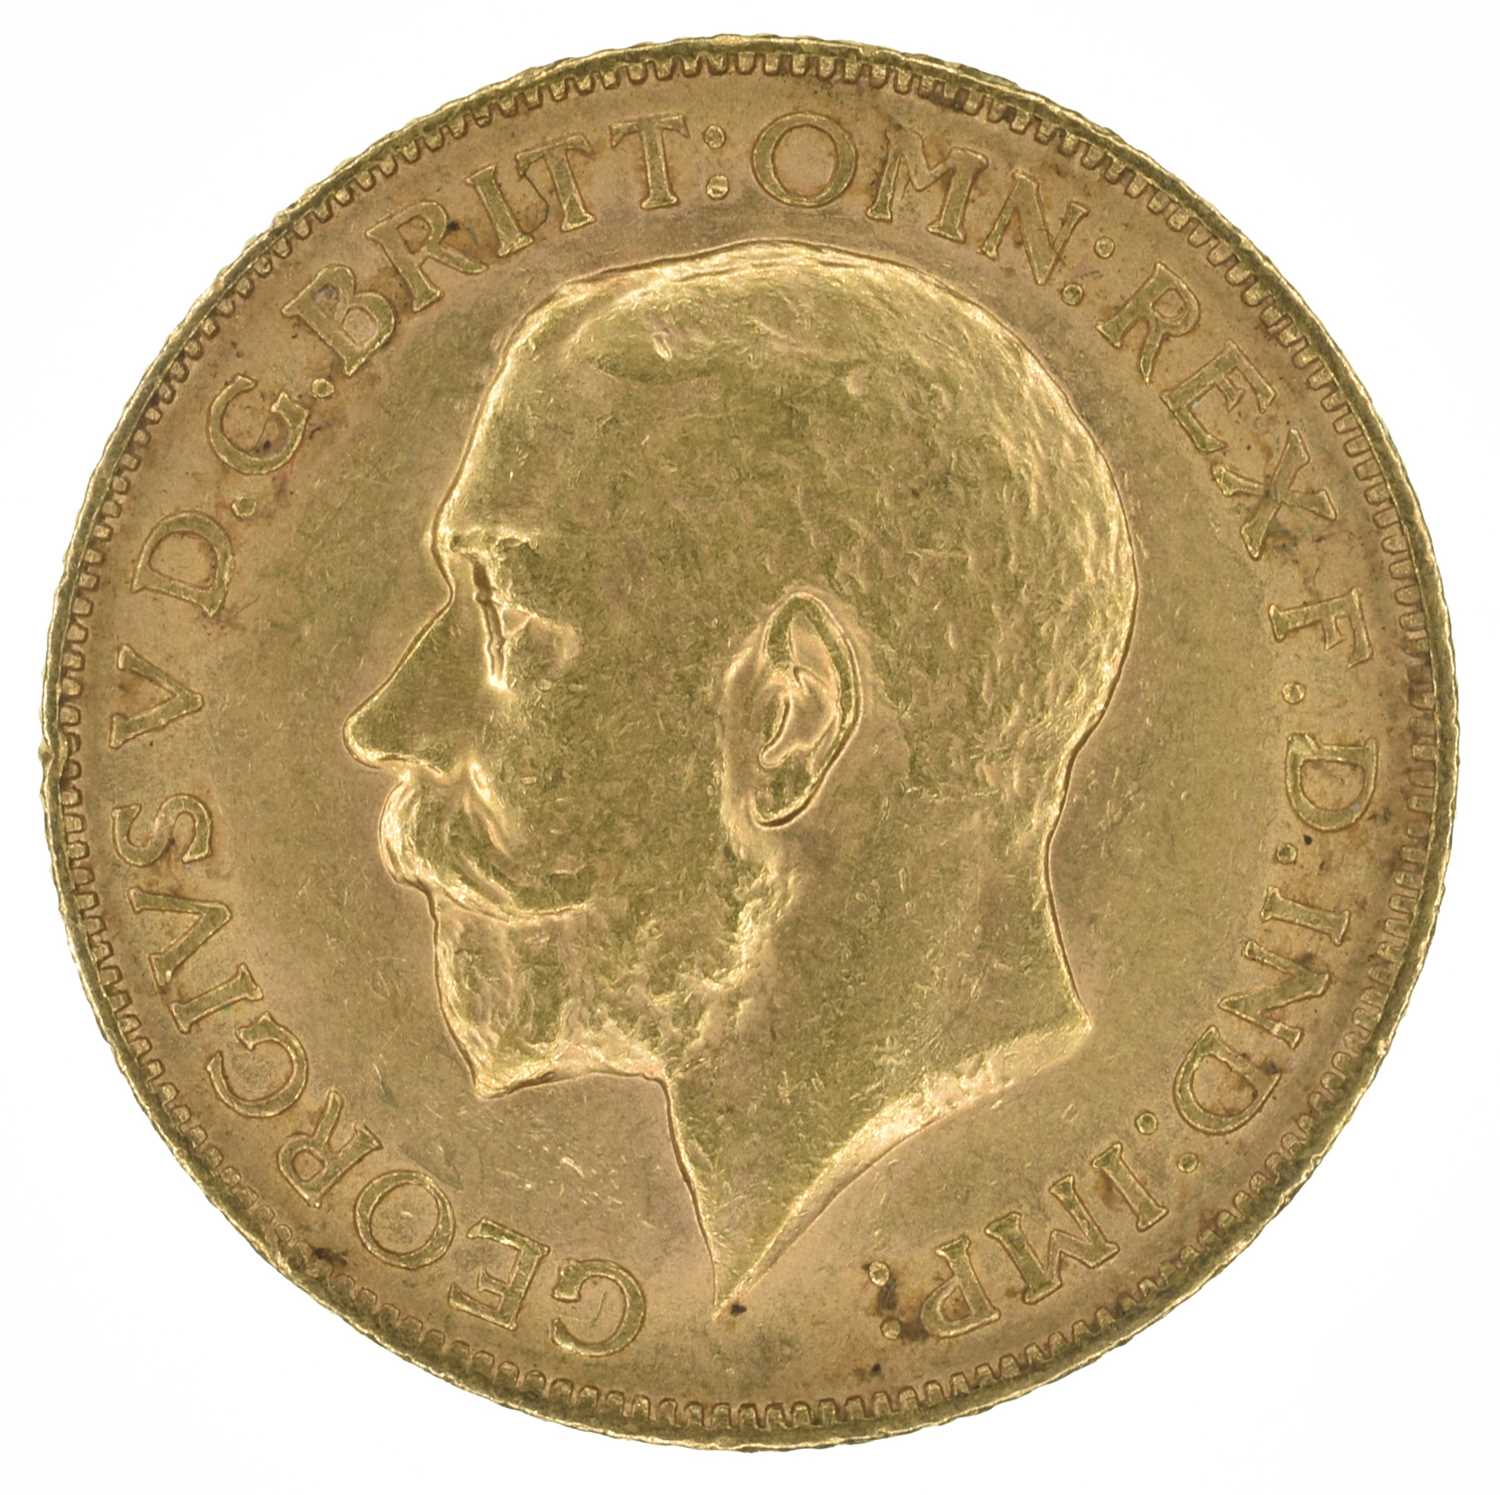 King George V, Sovereign, 1911.